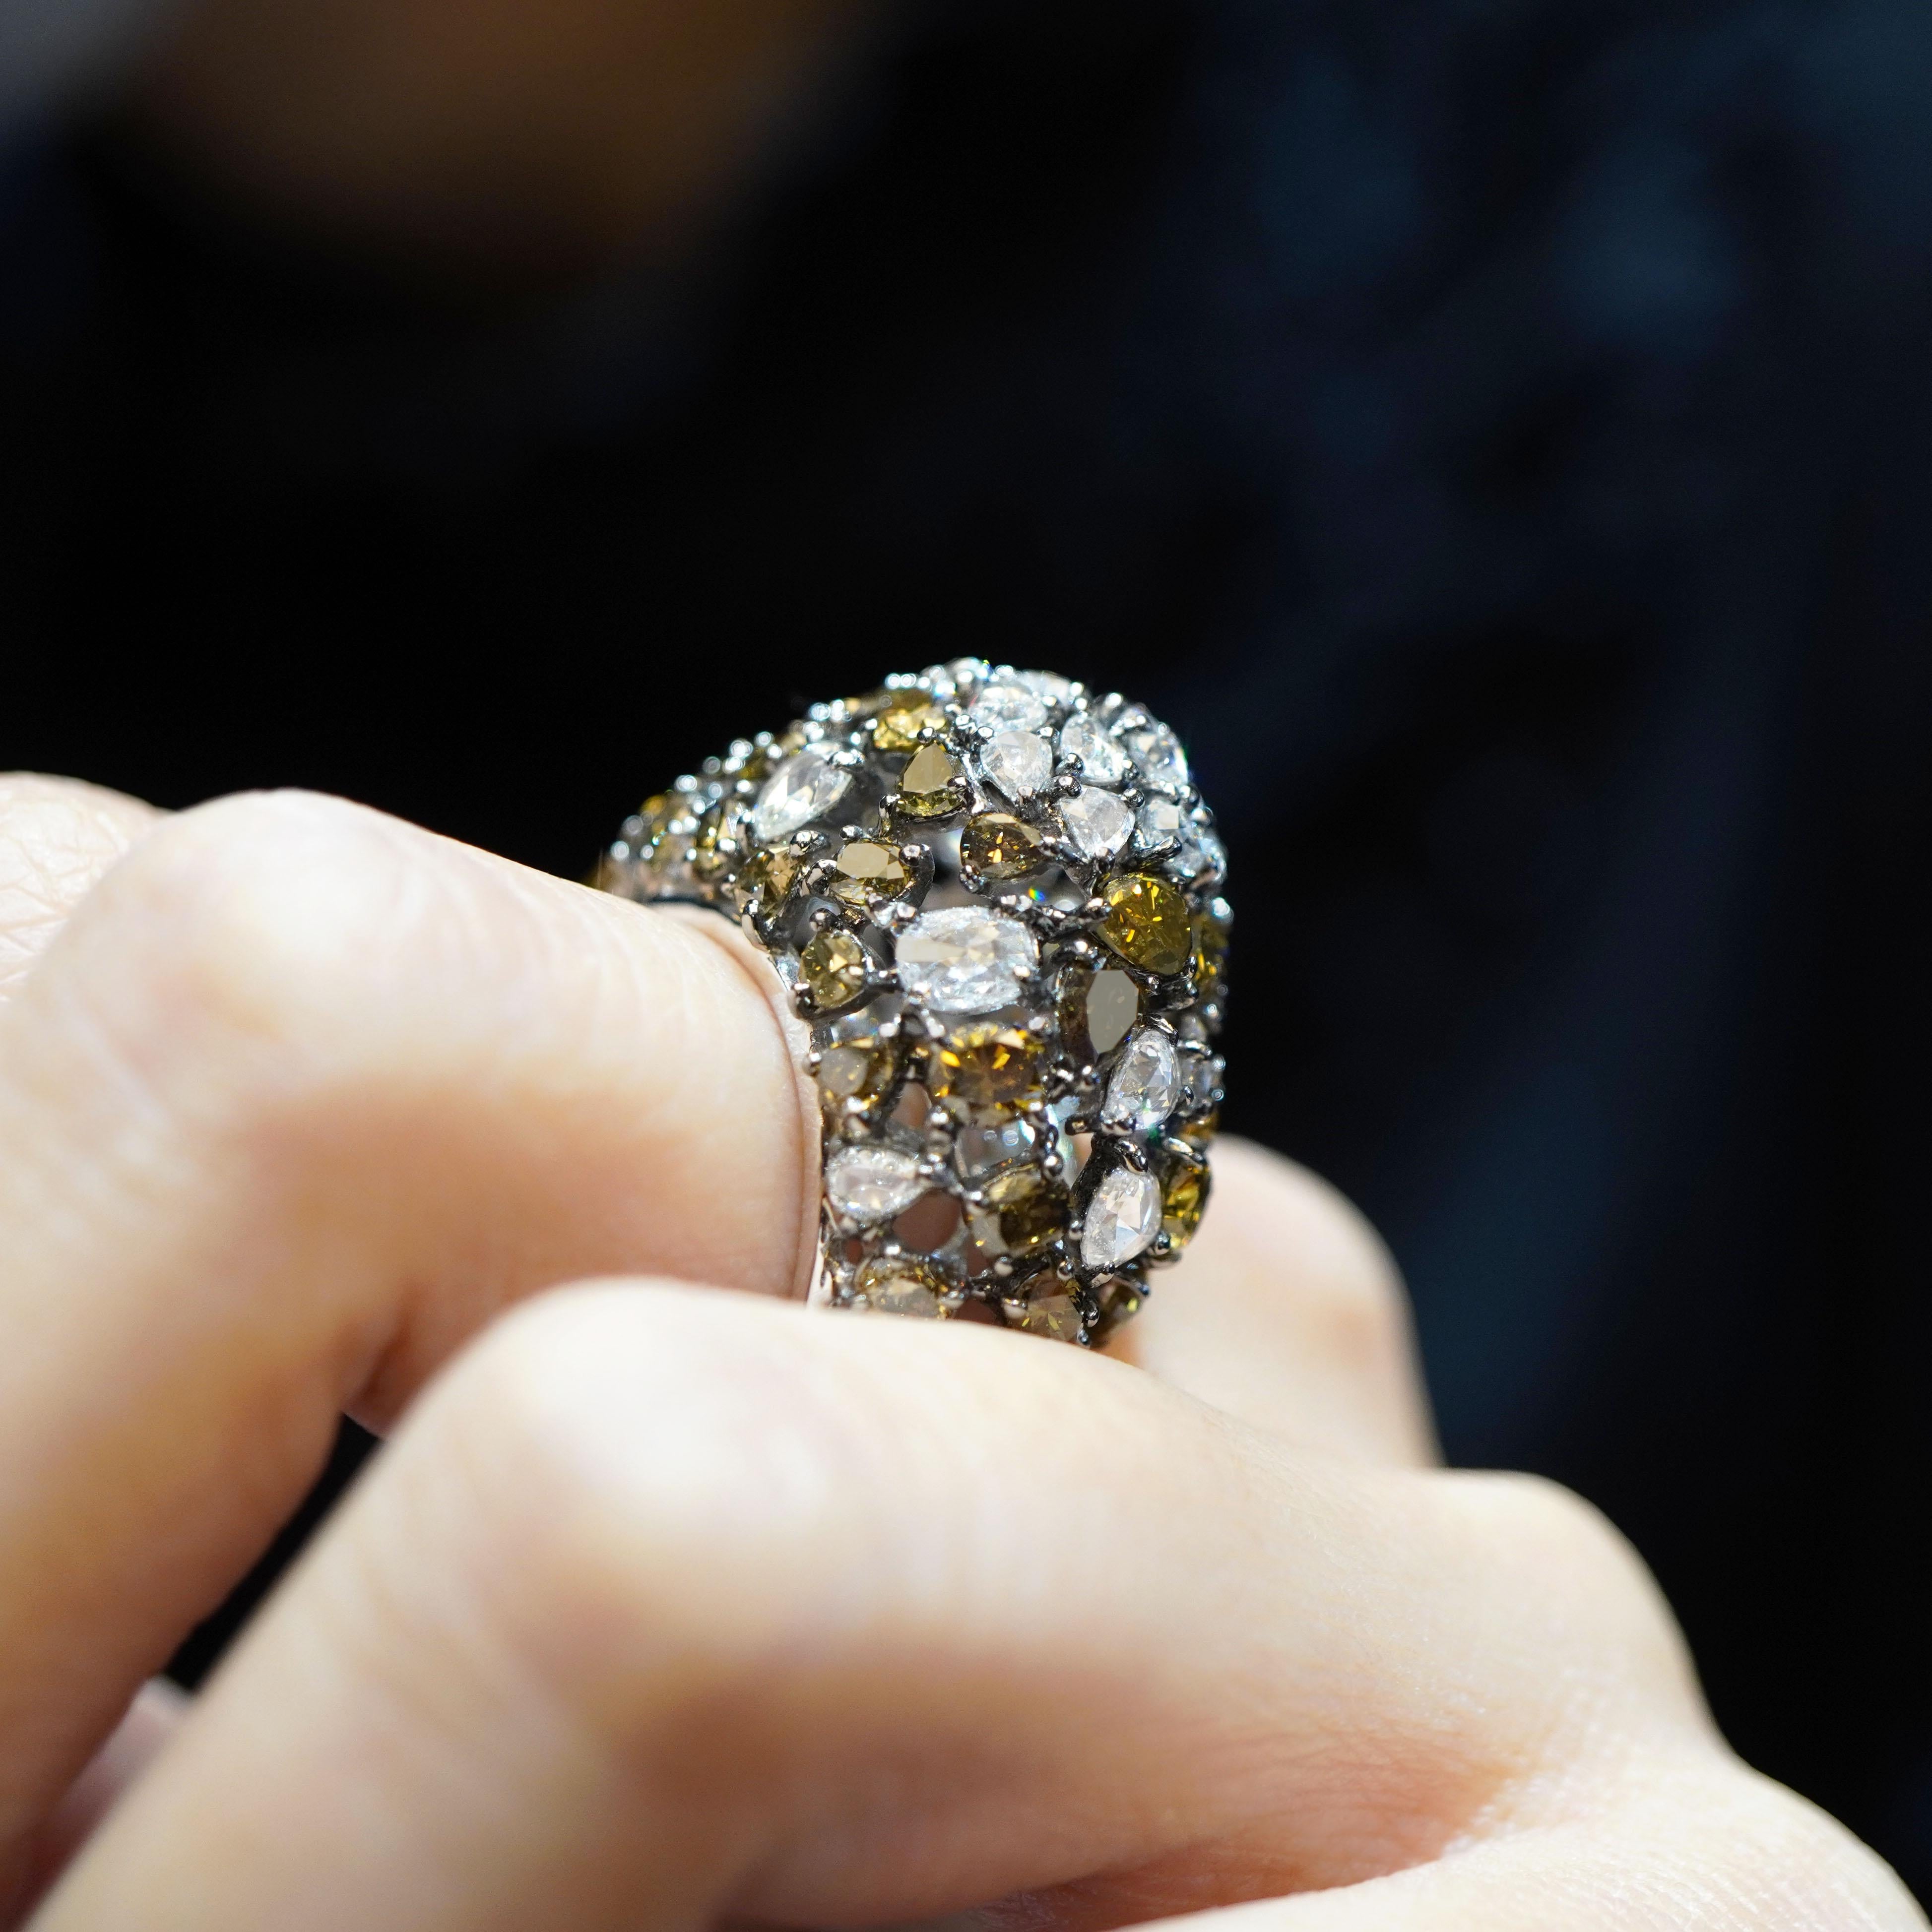 5.44 Karat natürlicher grüner Diamanten werden von 1,86 Karat weißer Diamanten in diesem wunderschönen Cluster-Cocktailring akzentuiert. Der Ring ist aus 18 K Gold gefertigt.  Die Einzelheiten des Rings sind nachstehend aufgeführt:
Farbe: